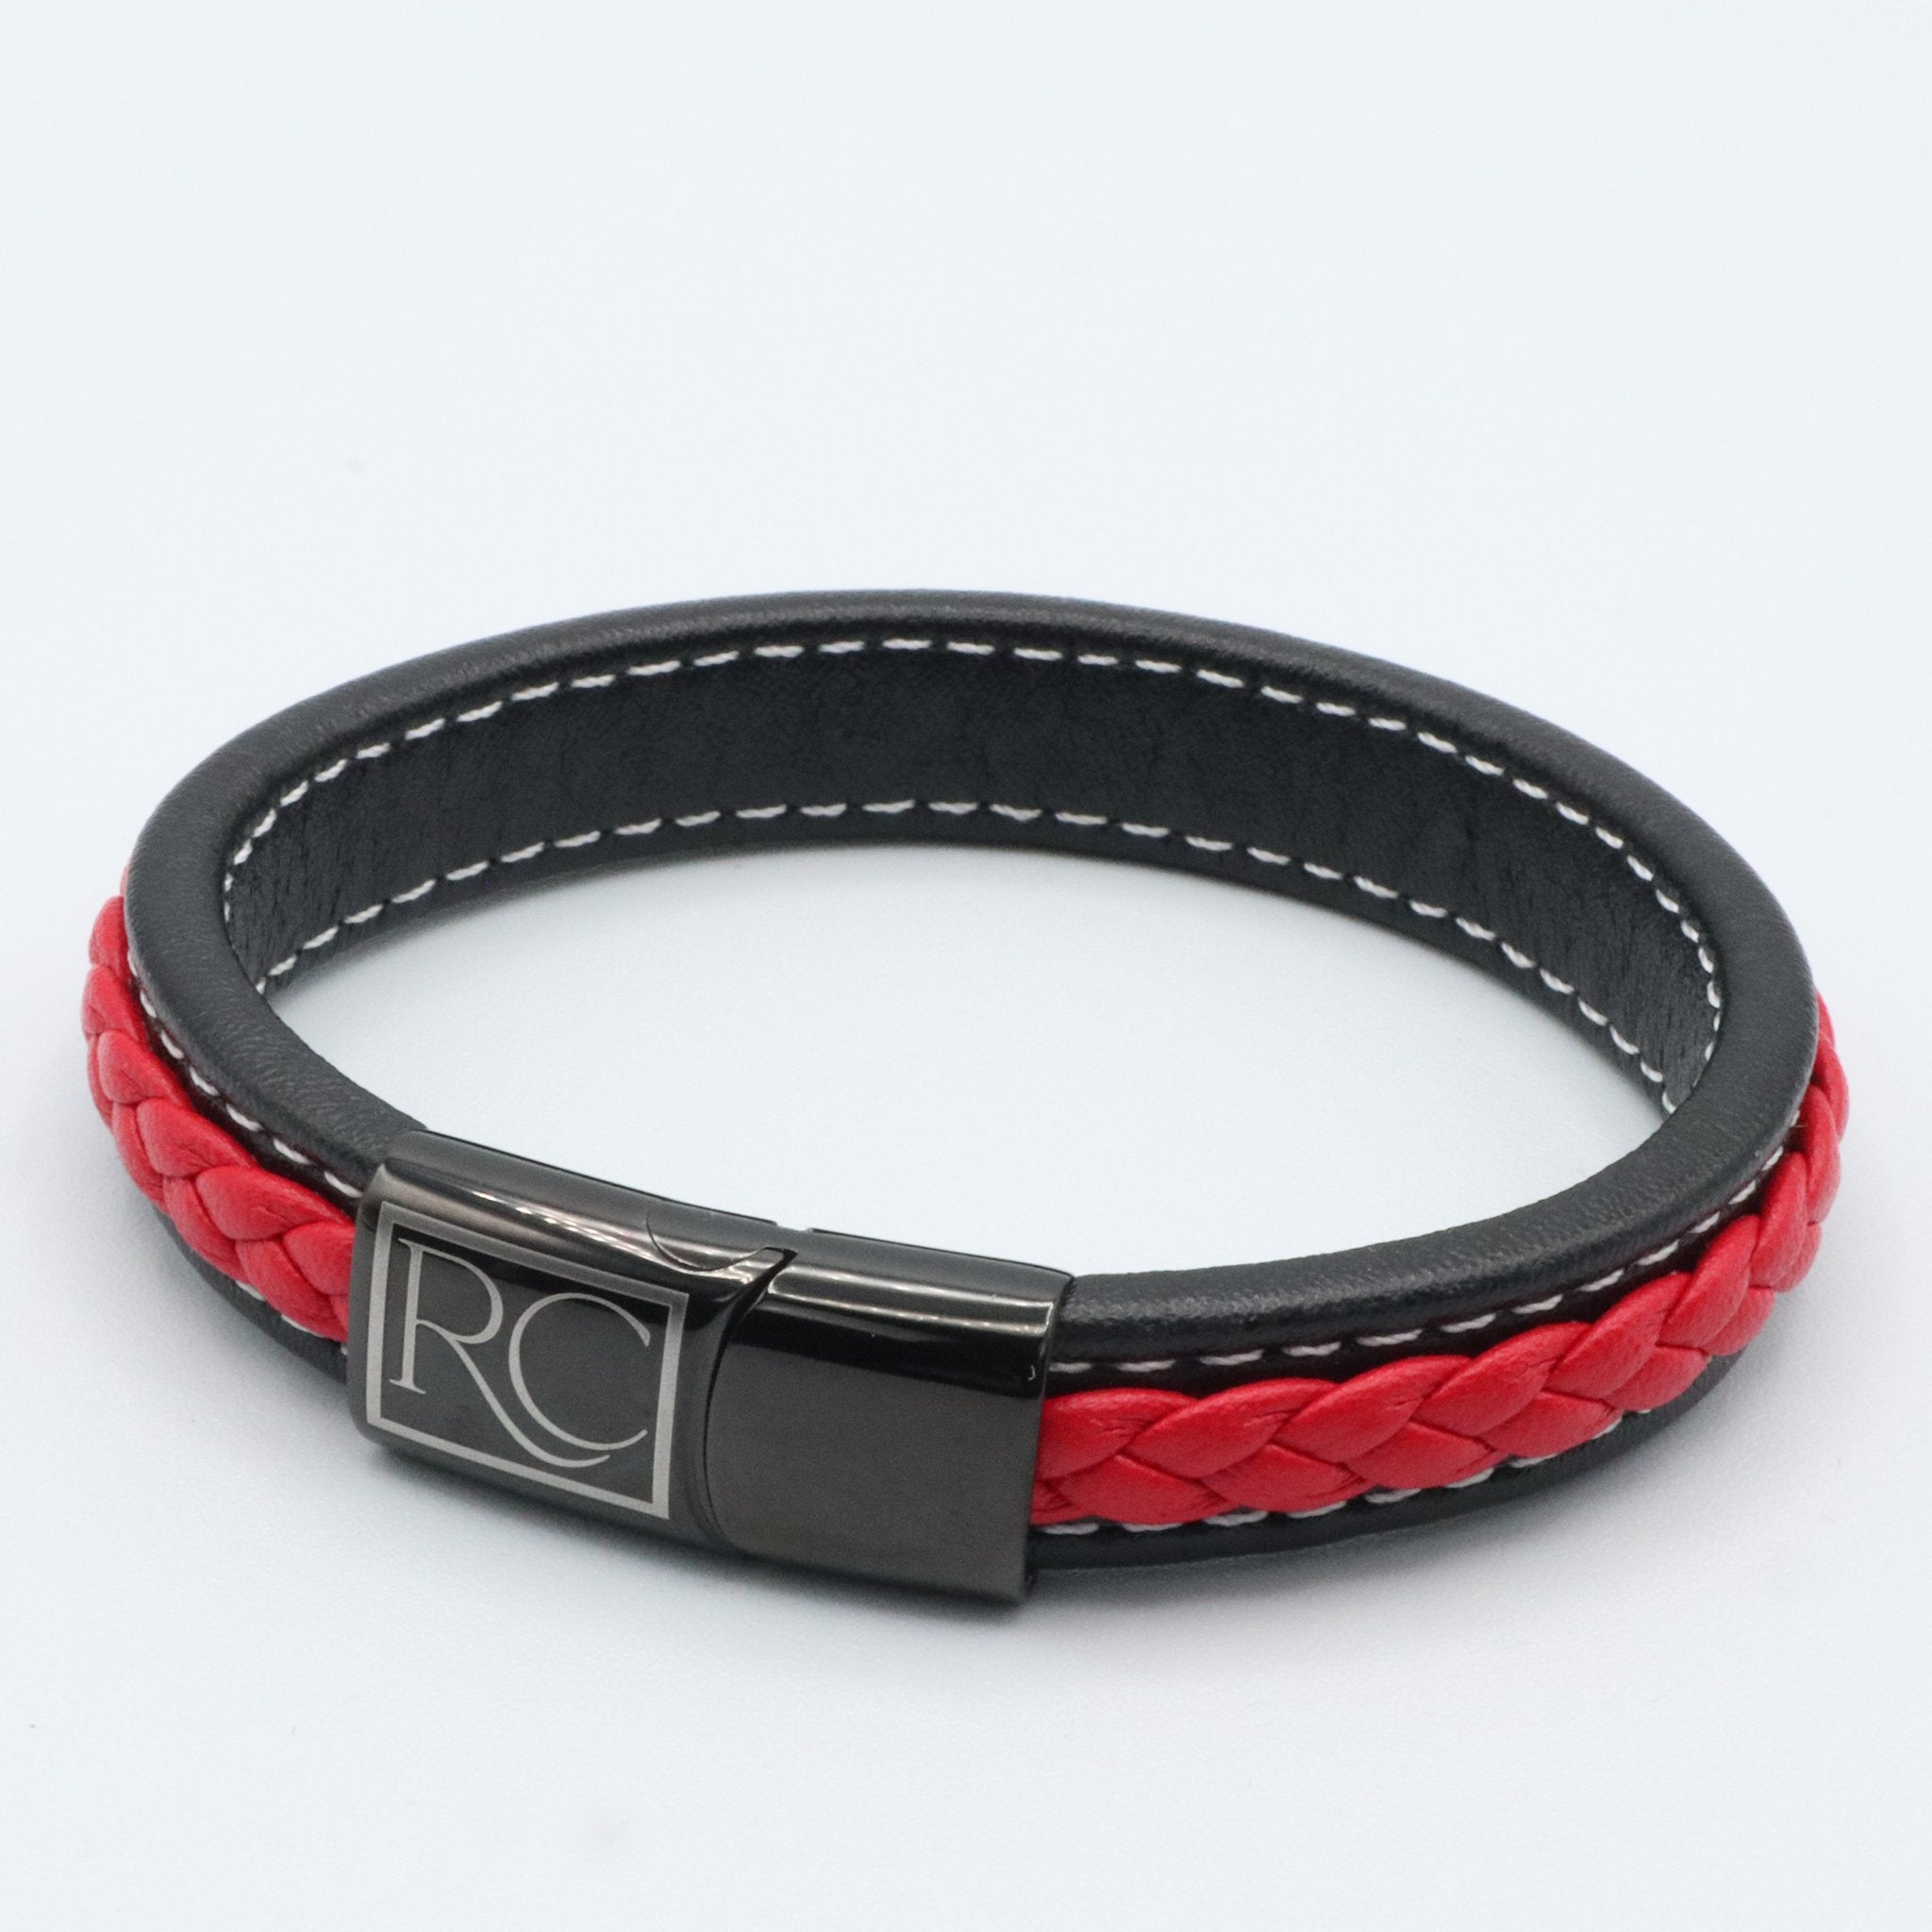 2pcs Black Red Flat Leather Bracelets Making Kit 20mm Square